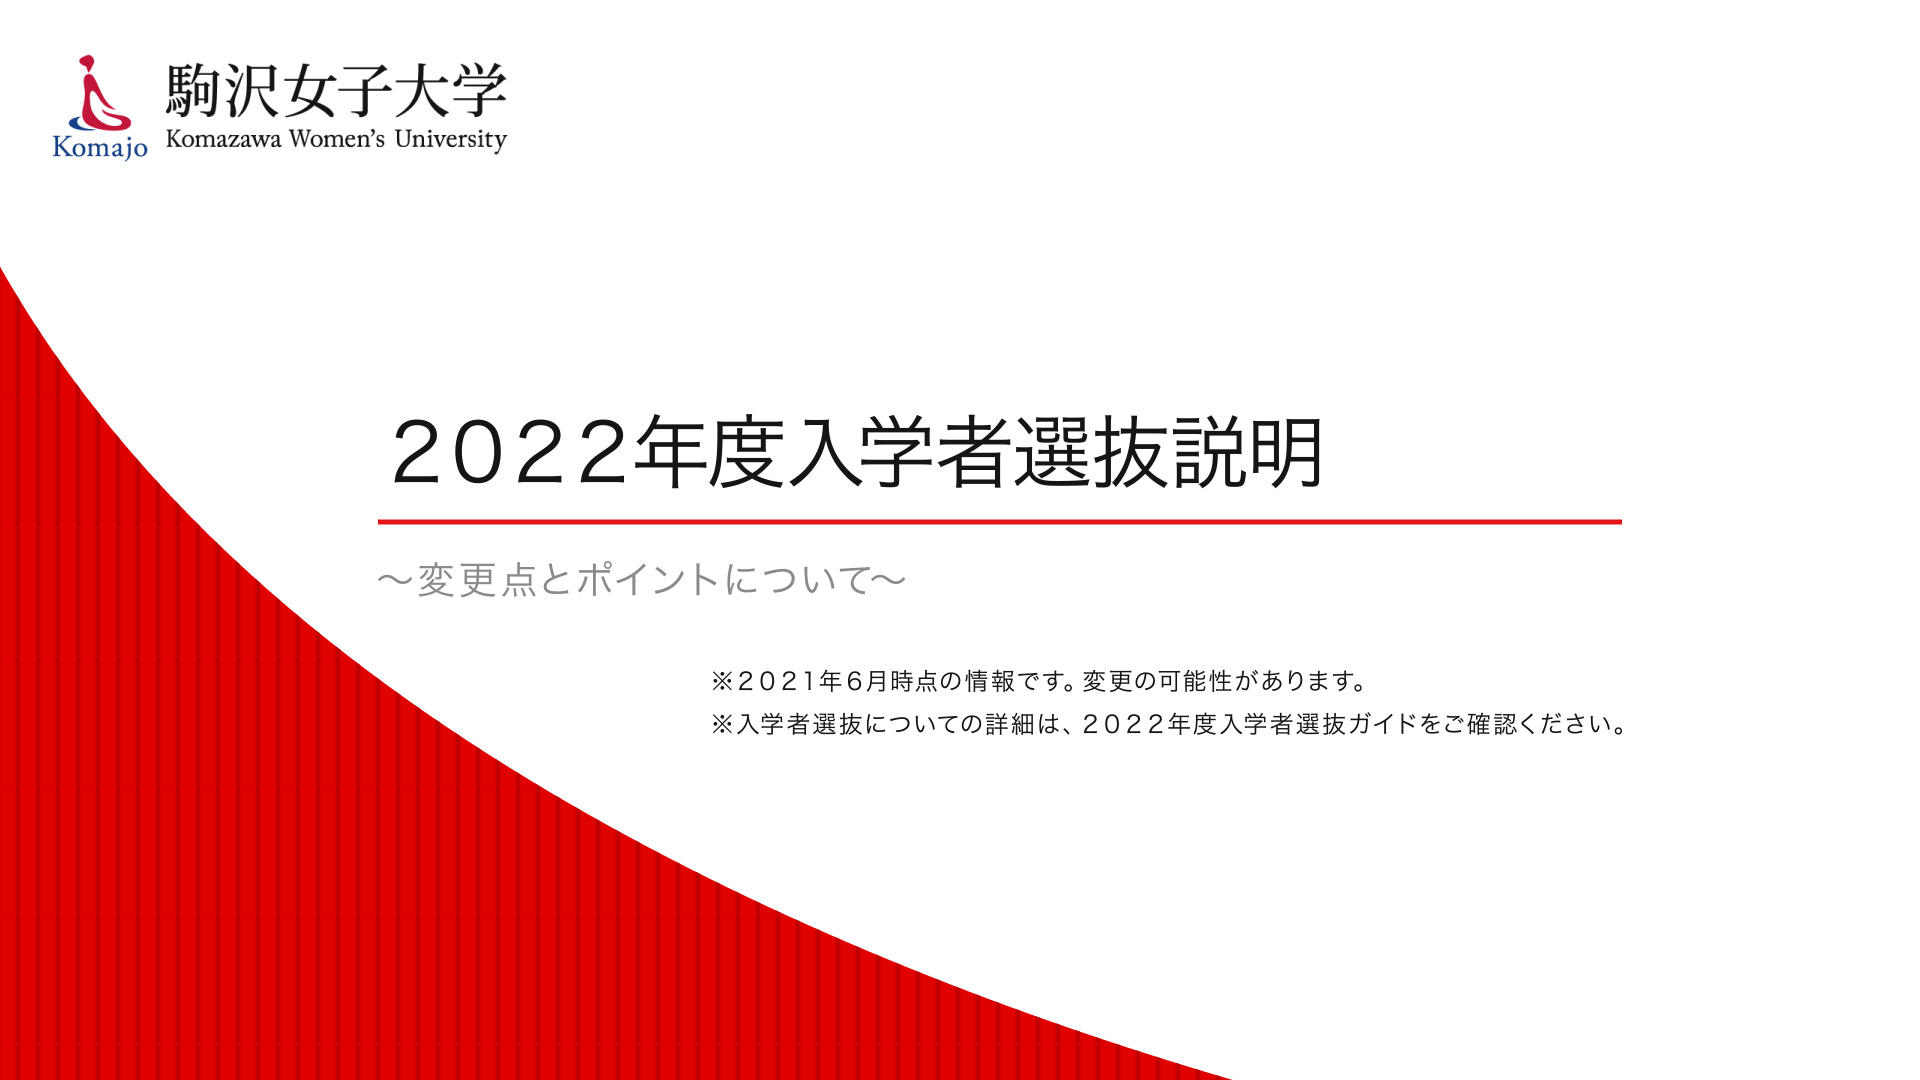 駒沢女子大学・駒沢女子短期大学が「高等学校進路指導ご担当者対象説明会」を開催 -- 特設サイトで動画をオンデマンド配信